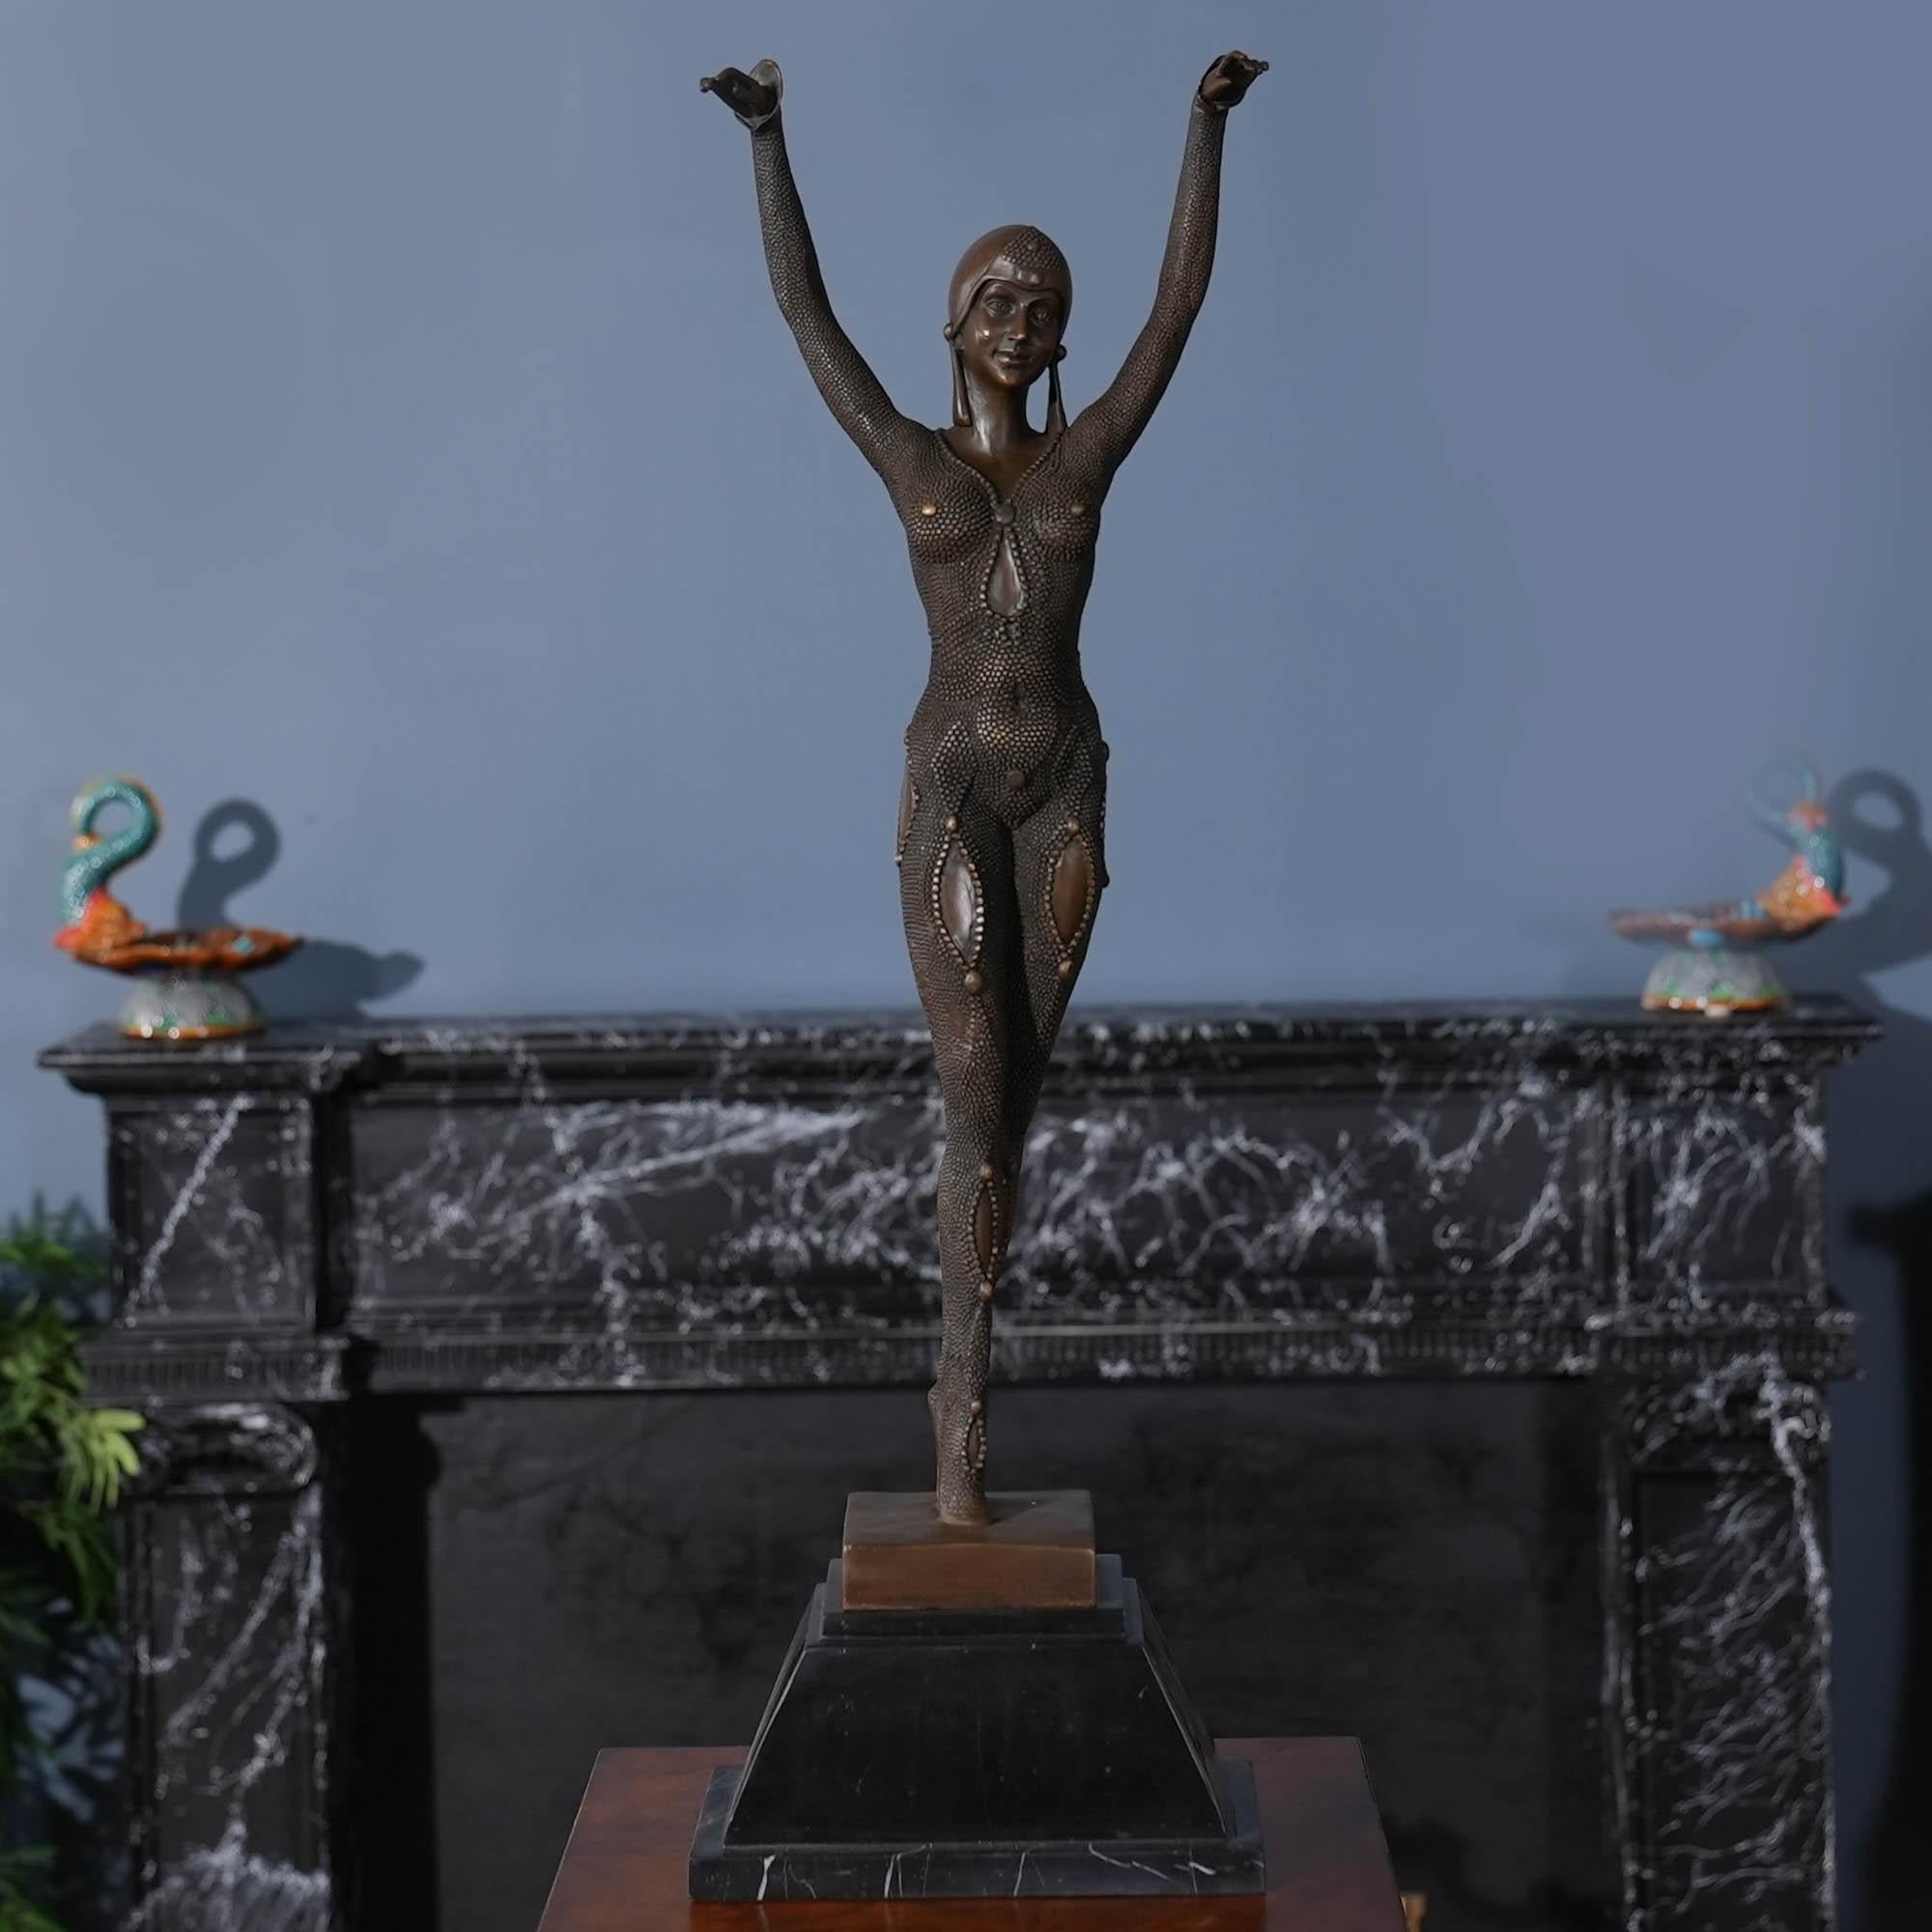 Die tanzende Frau aus Bronze auf einem Marmorsockel ist selbst im Stillstand anmutig und stellt eine auffällige Ergänzung für jede Umgebung dar. Die Bronzestatue der tanzenden Frau wurde im traditionellen Wachsausschmelzverfahren gegossen und mit